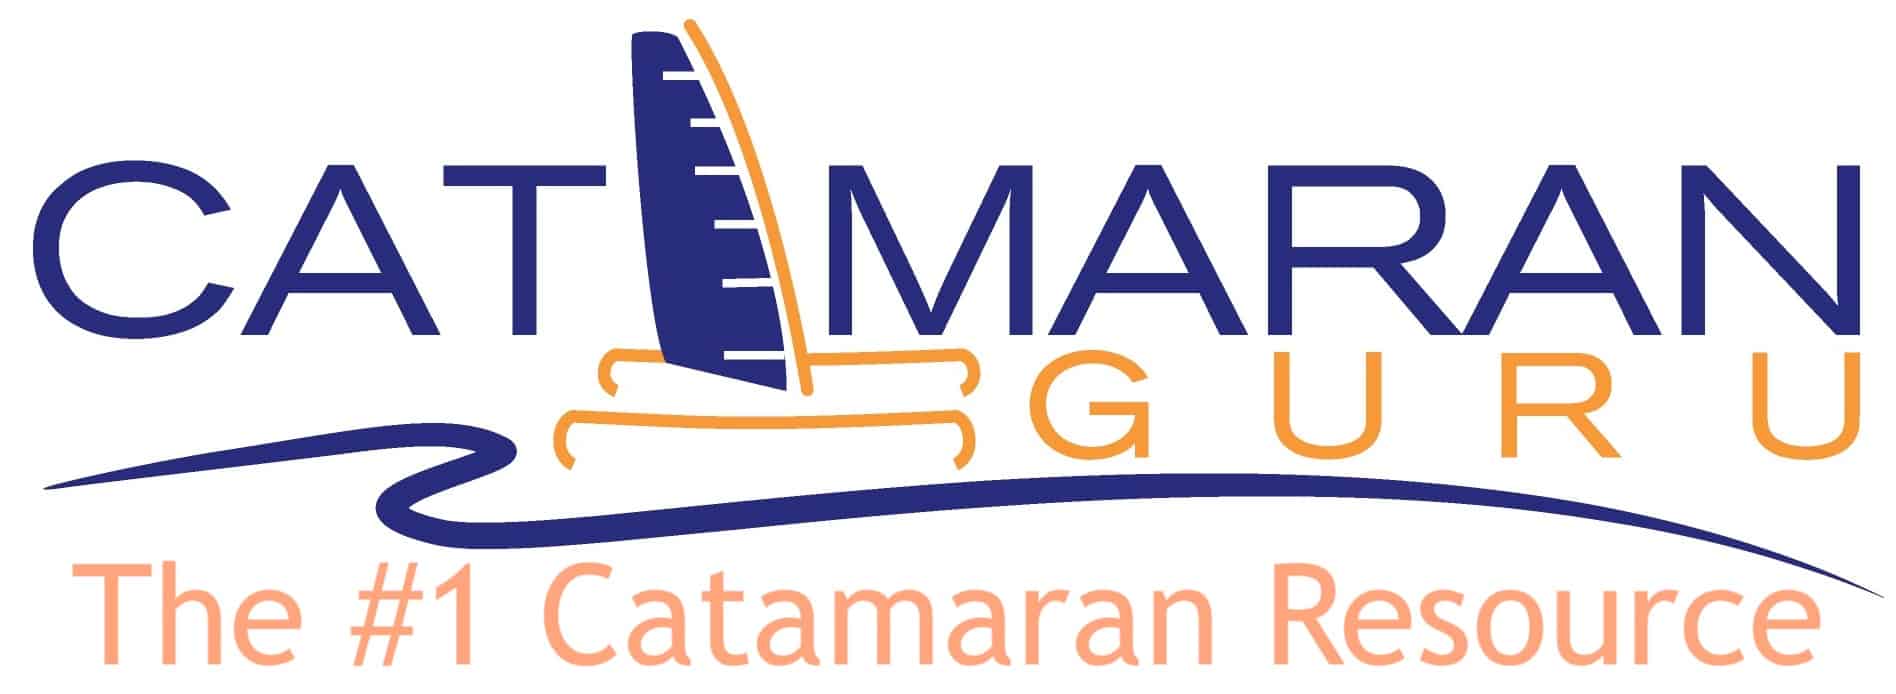 catamaran guru logo